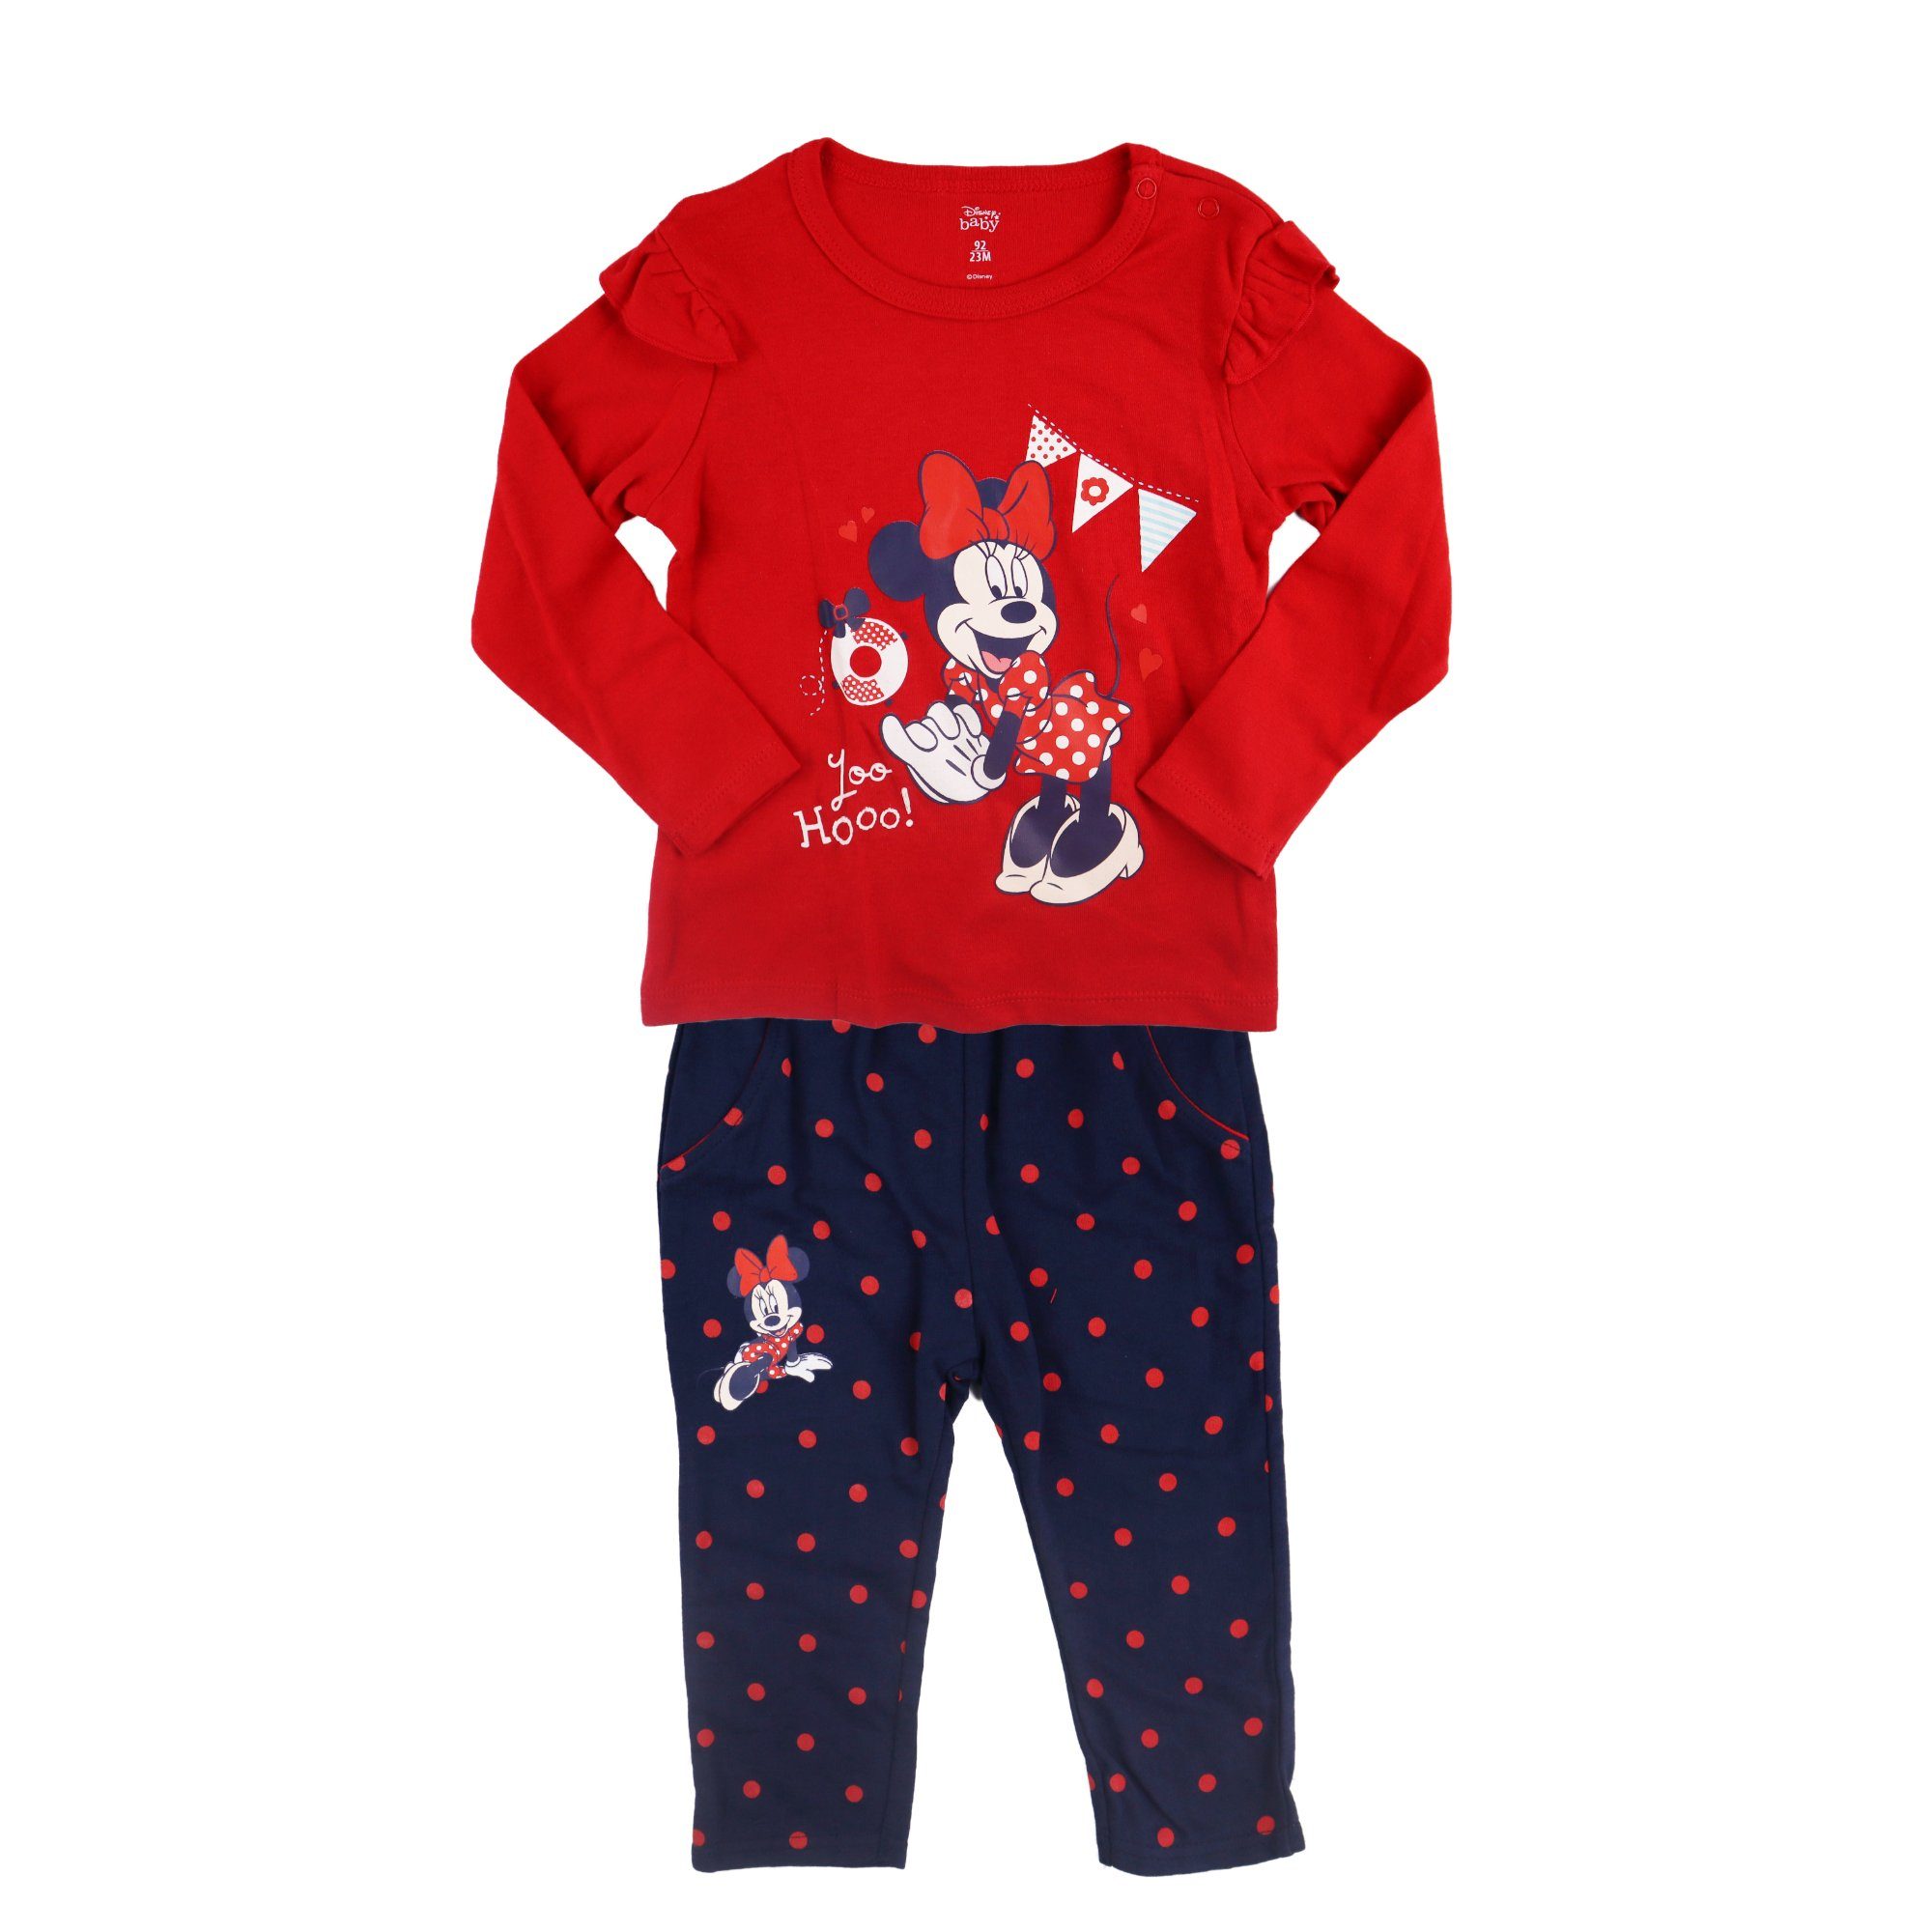 Disney Langarmshirt Disney Minnie Maus Baby 2tlg. Set langarm Shirt plus Hose Gr. 62 bis 92, 100% Baumwolle Rot